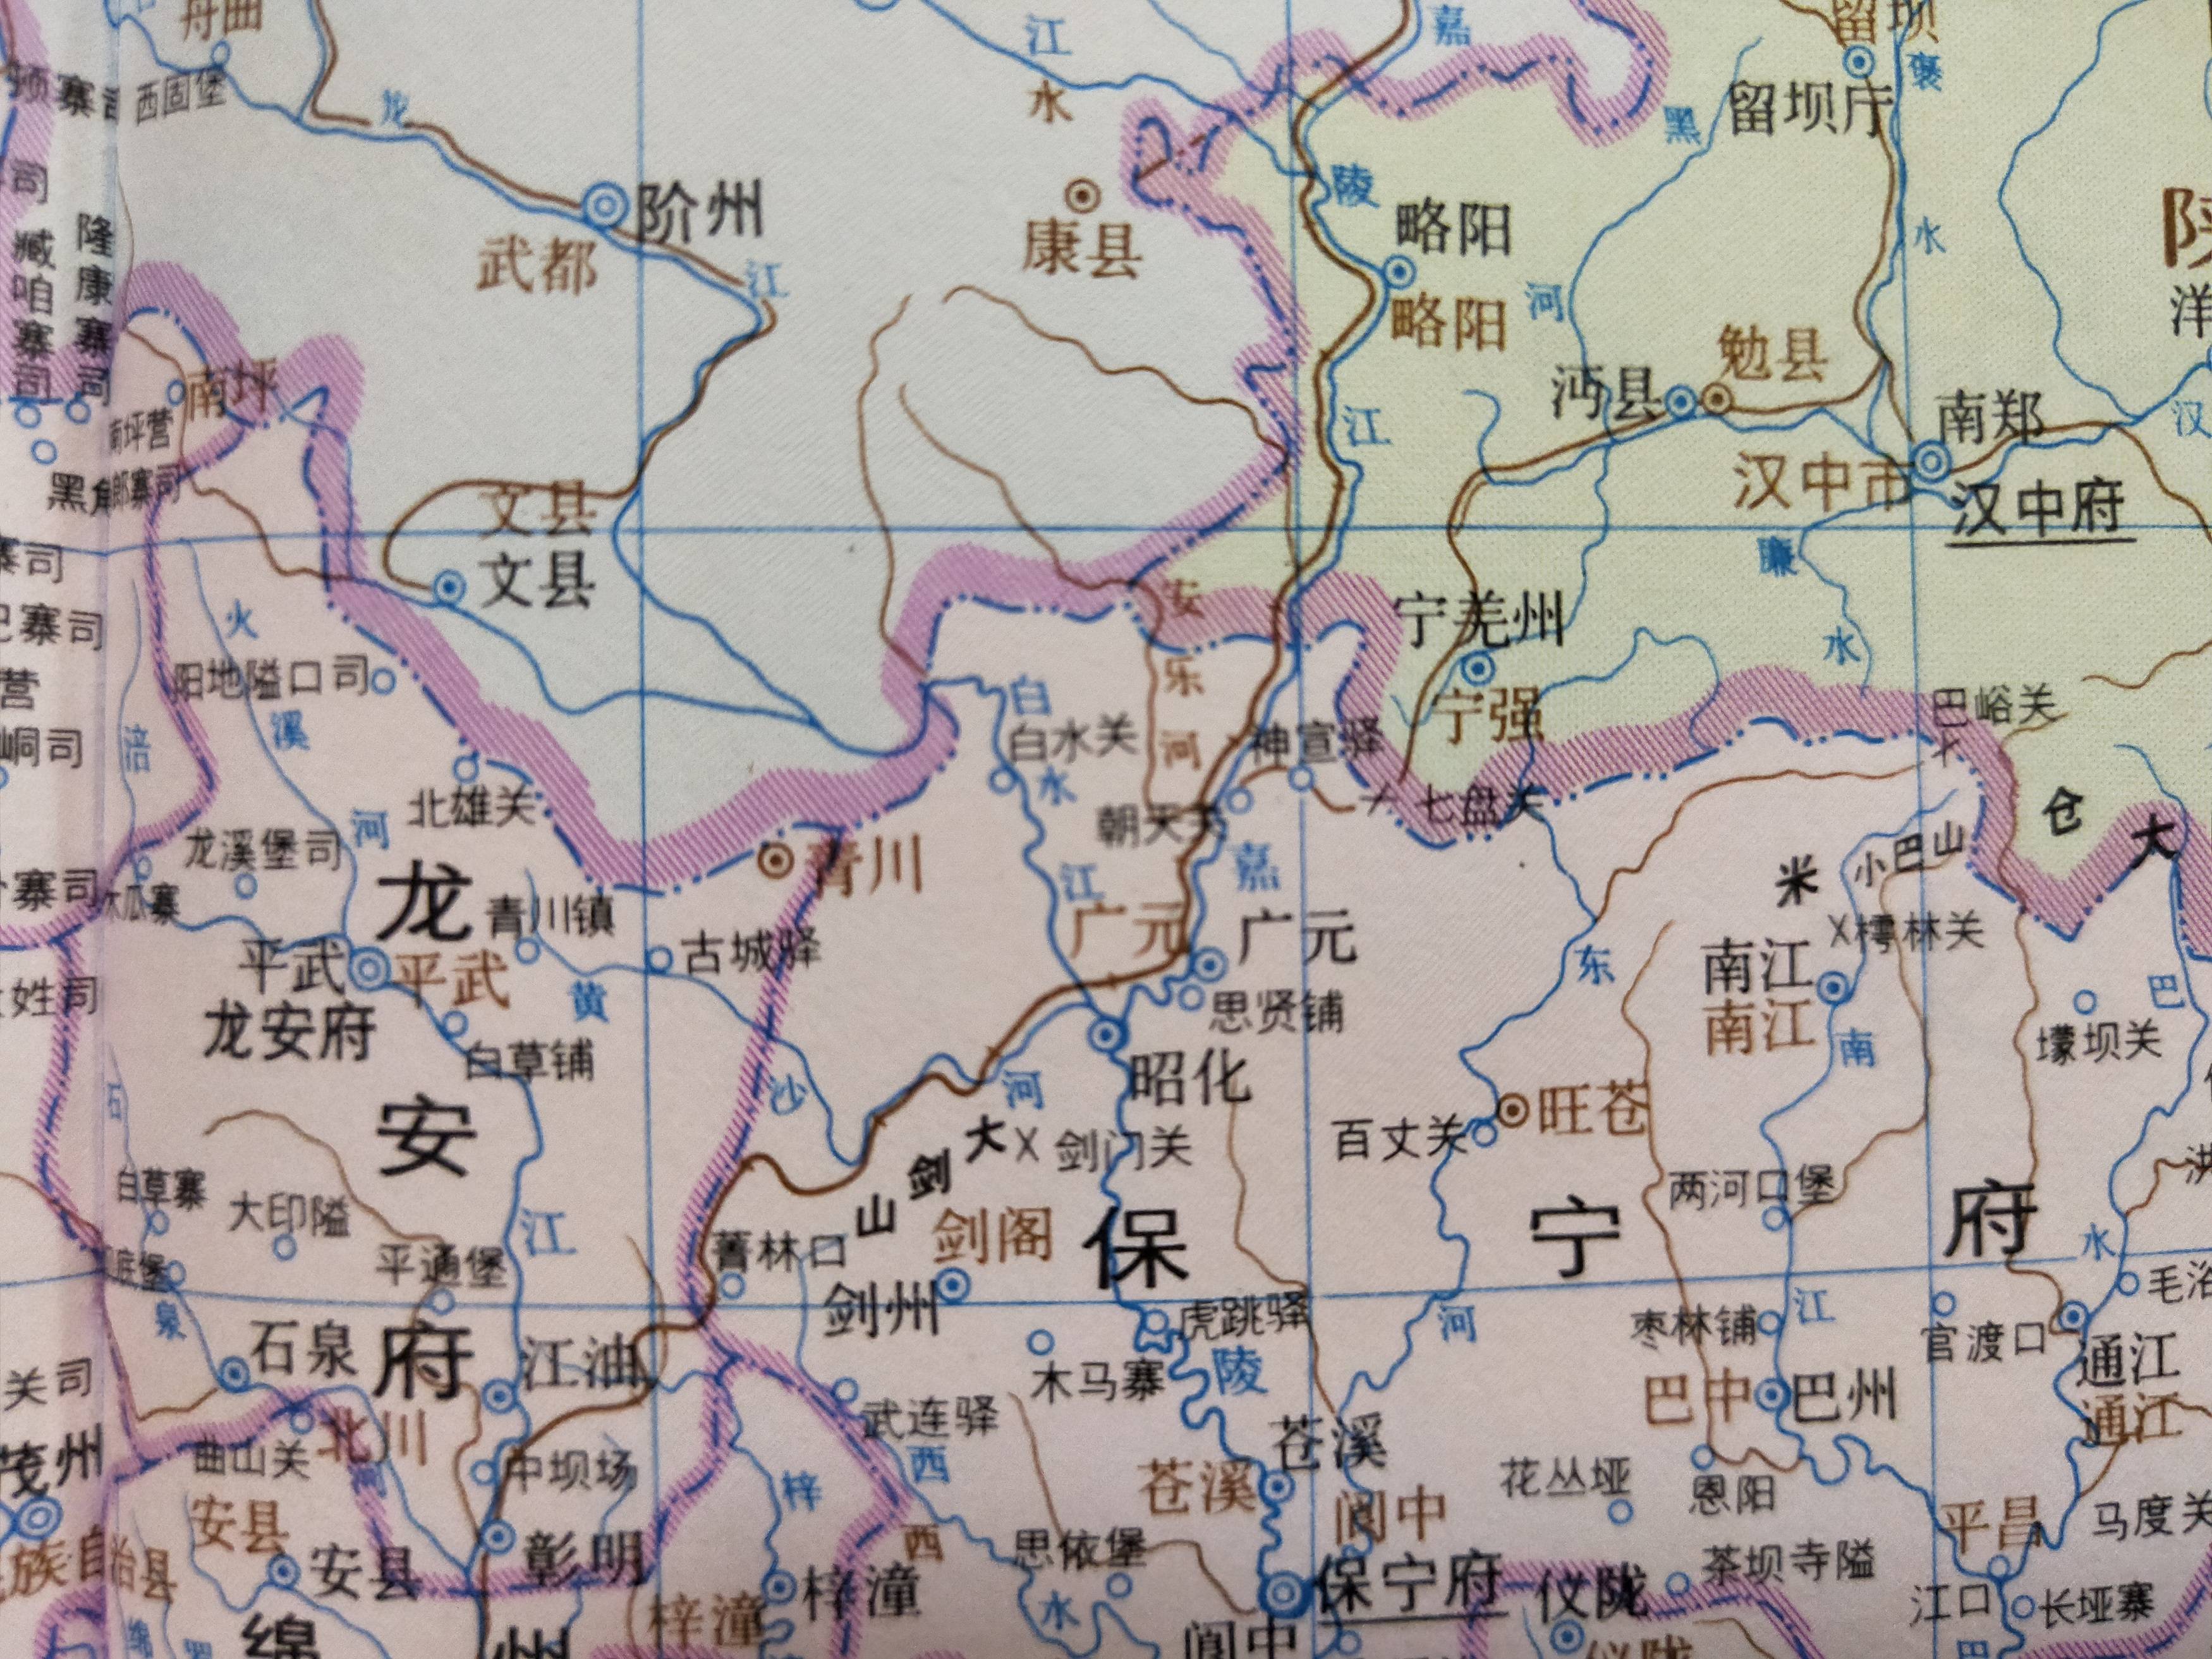 相关资料来源于《中国历史地图集》与《中国地名沿革对照表》,谈历史